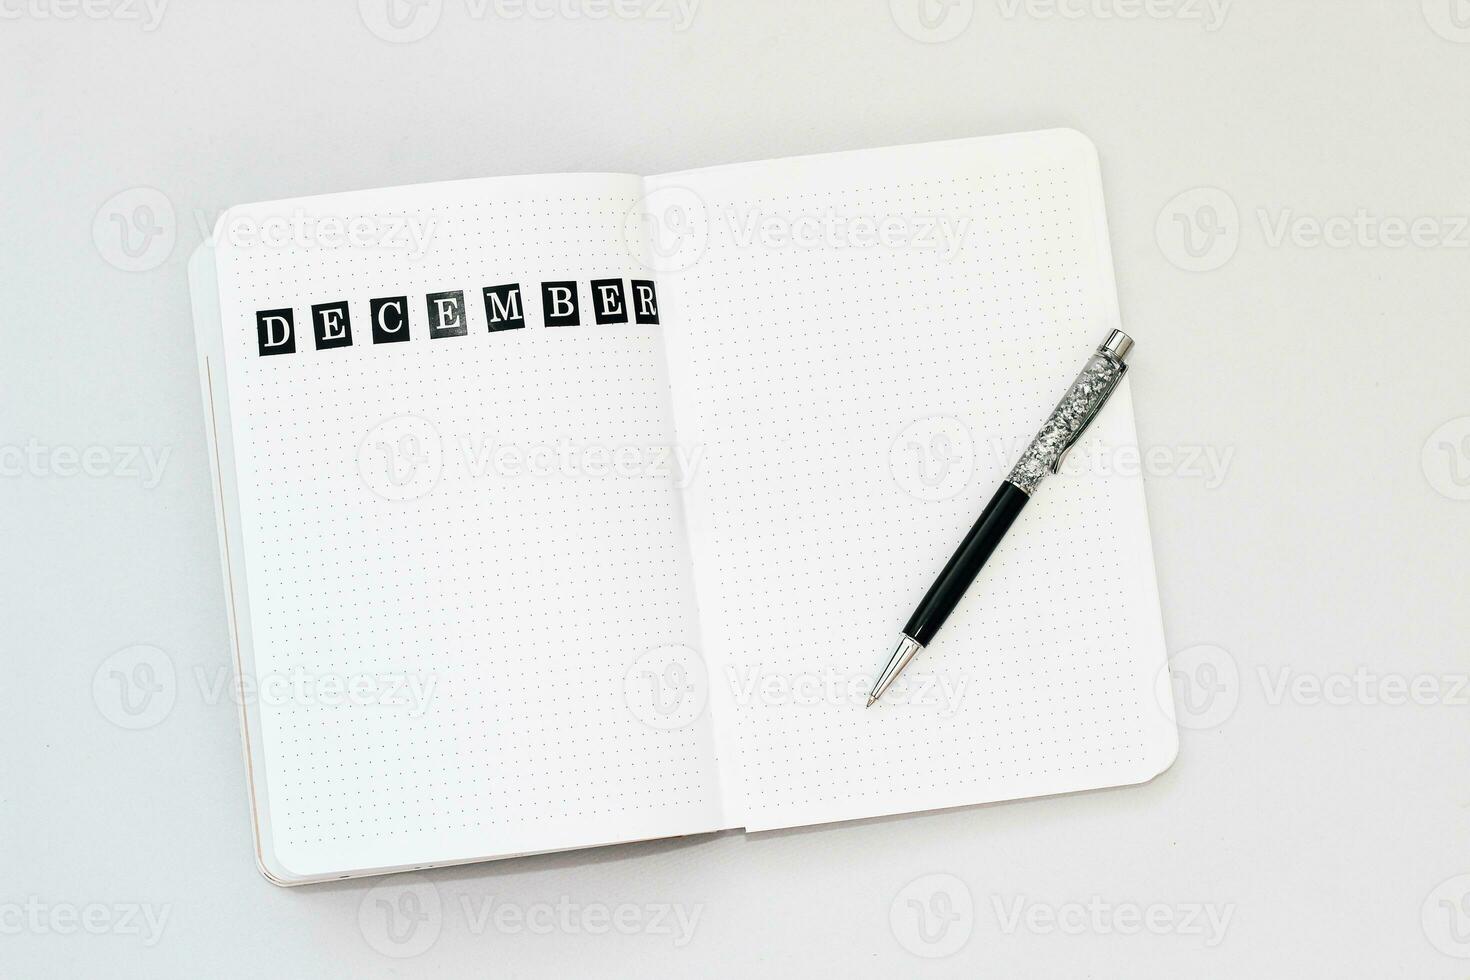 vulling in de dagboek, schrijven december in een notitieboekje in een punt foto